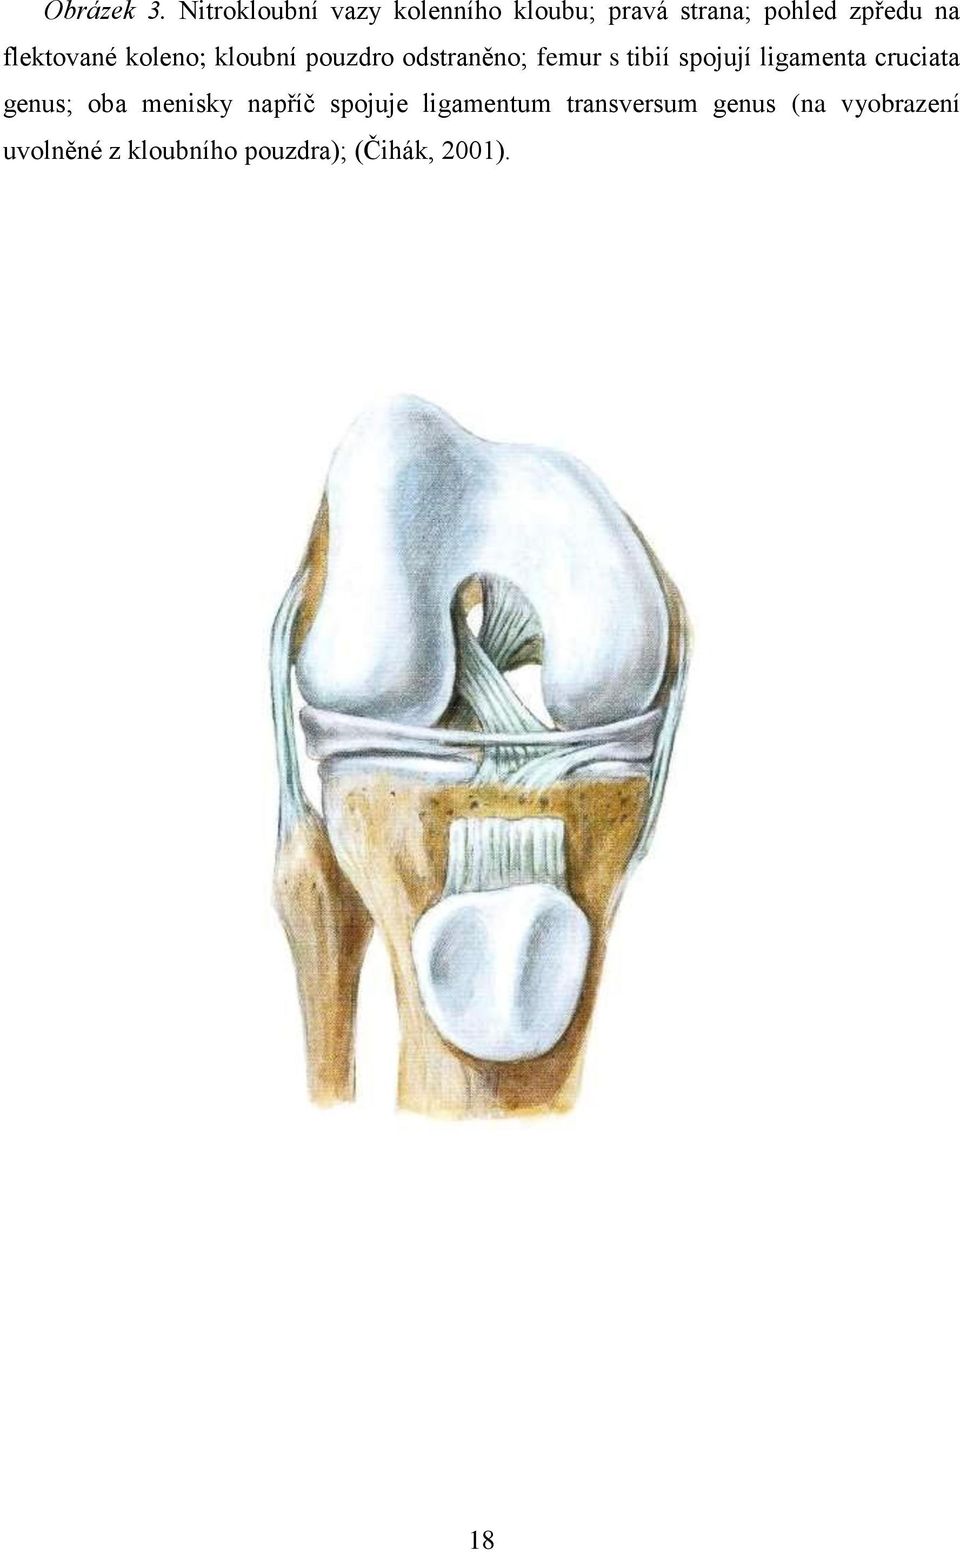 flektované koleno; kloubní pouzdro odstraněno; femur s tibií spojují